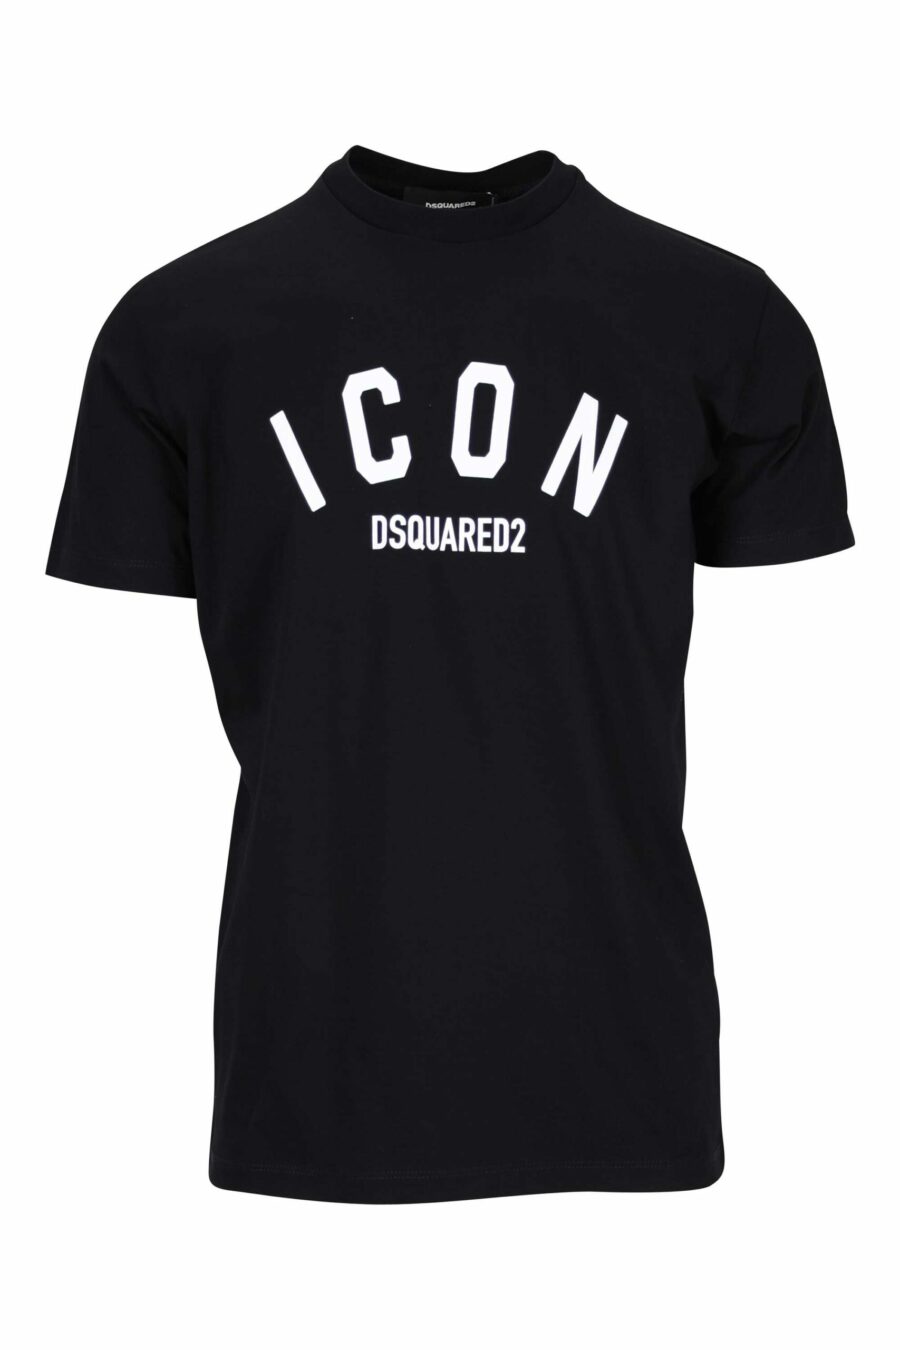 T-shirt preta com o logótipo "icon" dobrado - 8054148400989 à escala